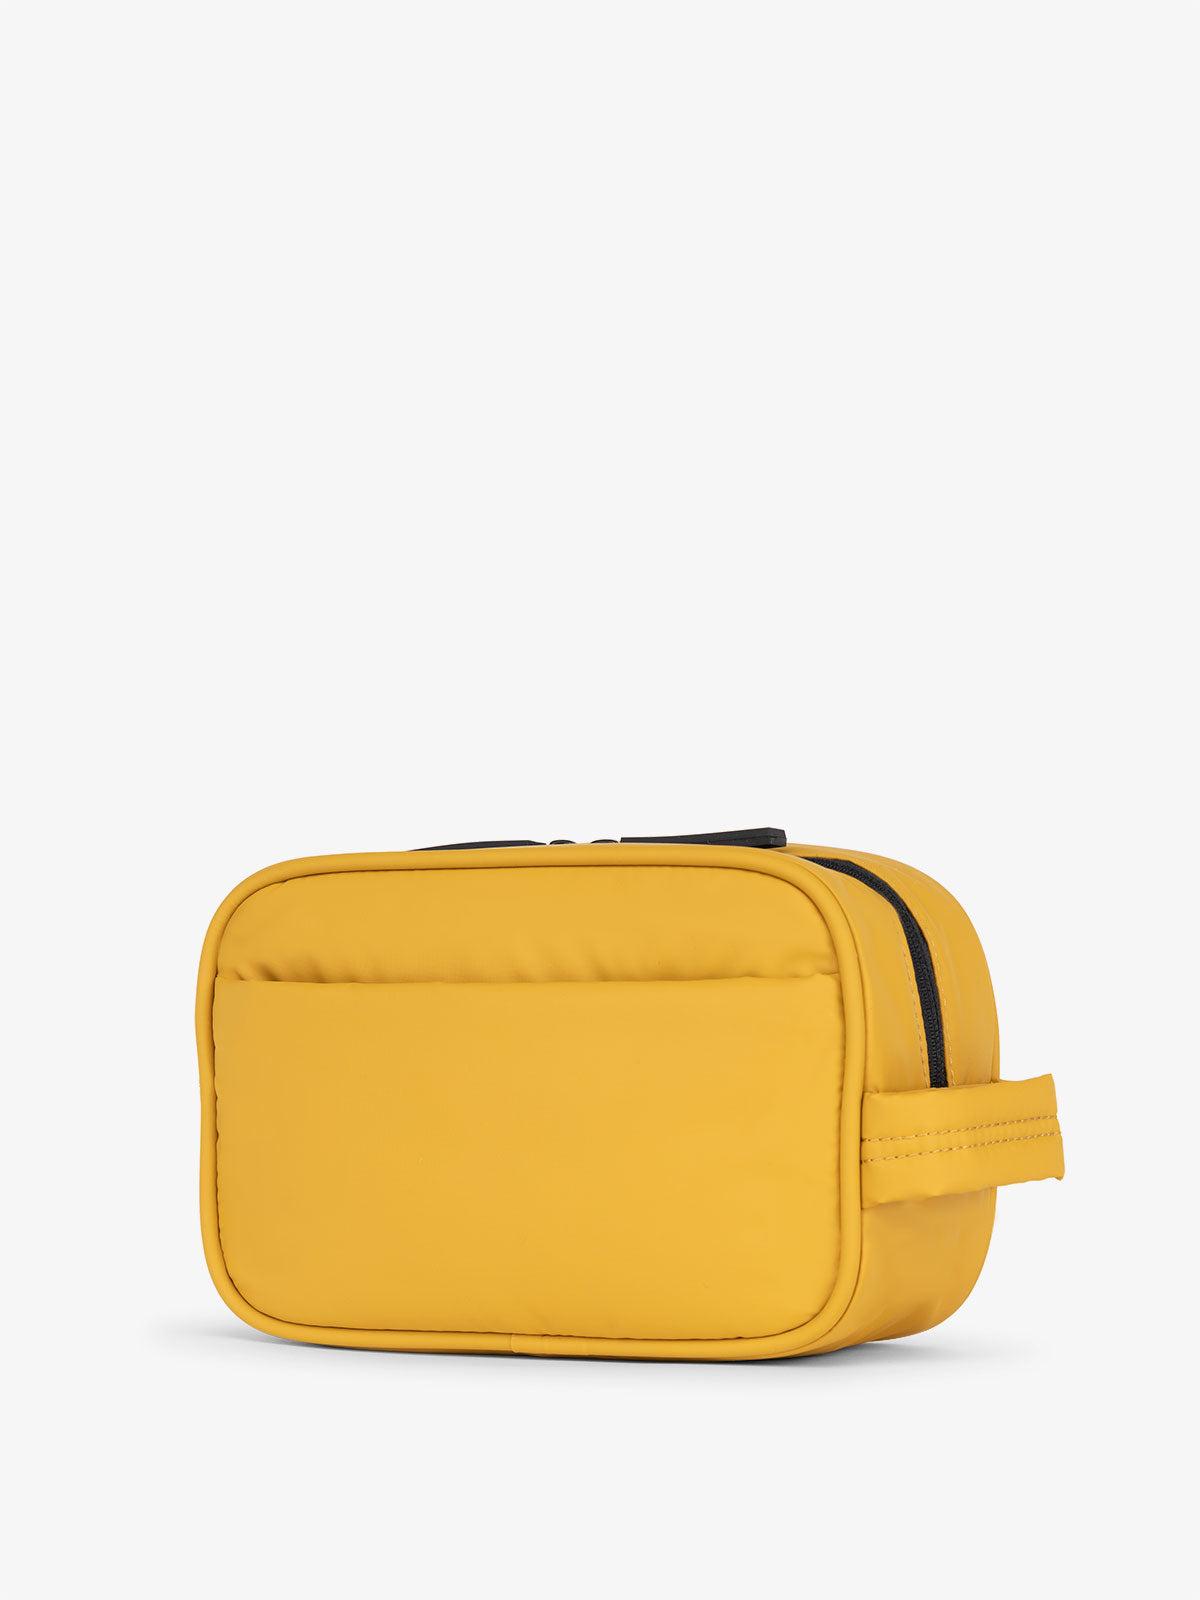 yellow makeup bag